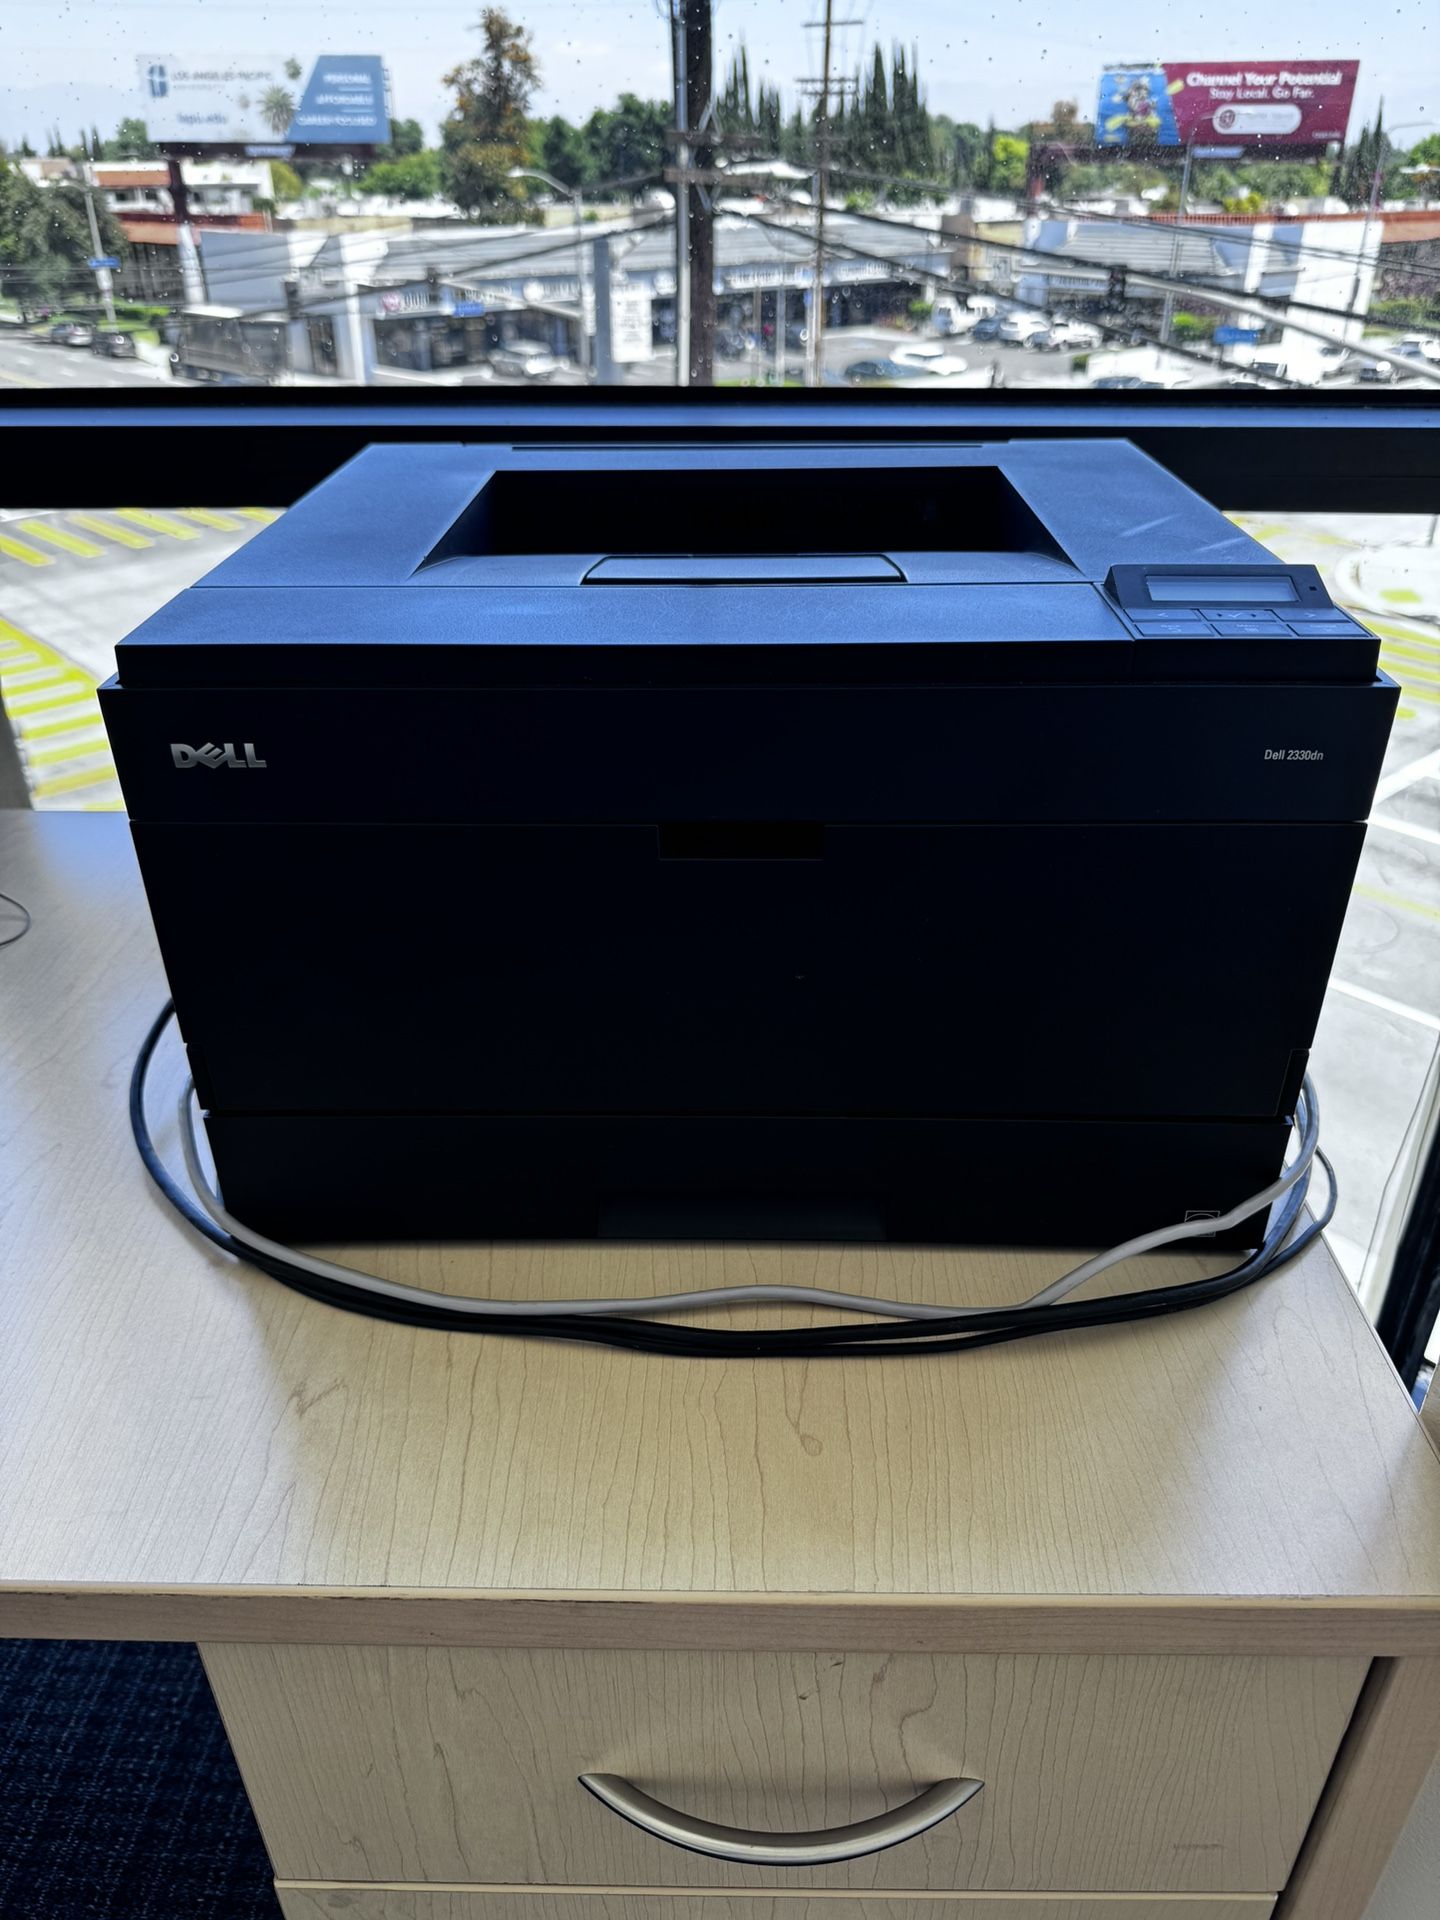 Dell Laser Printer 